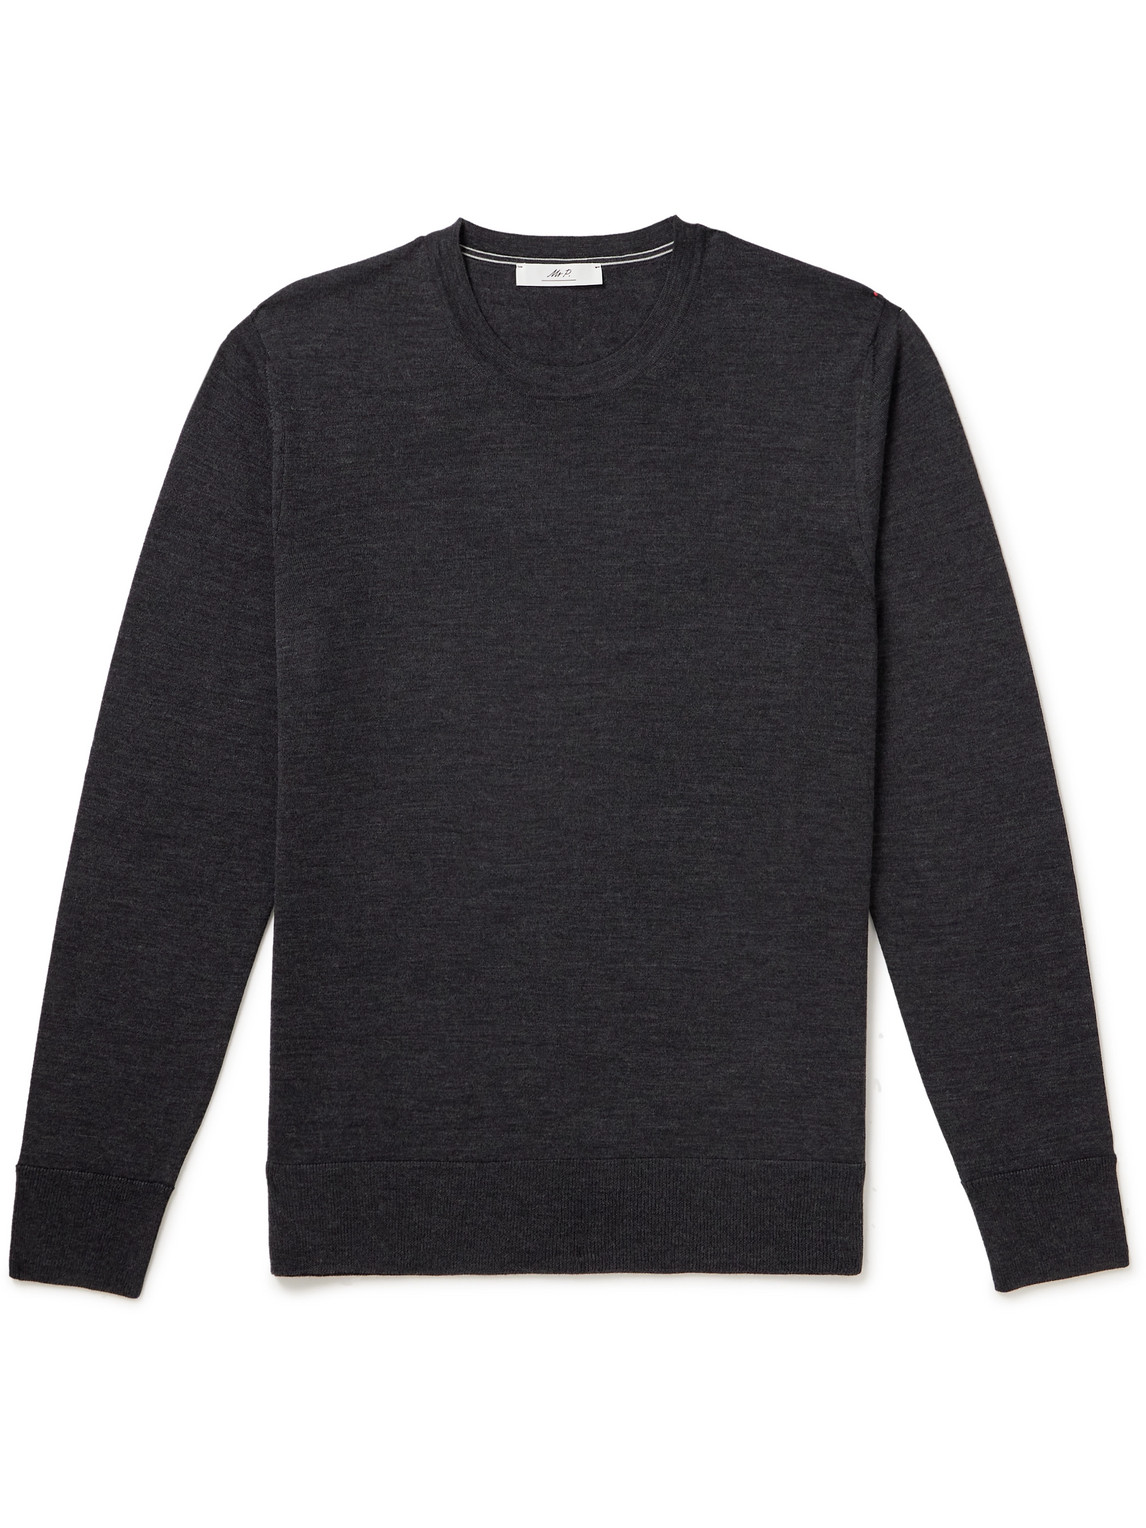 Mr P Merino Wool Sweater In Gray